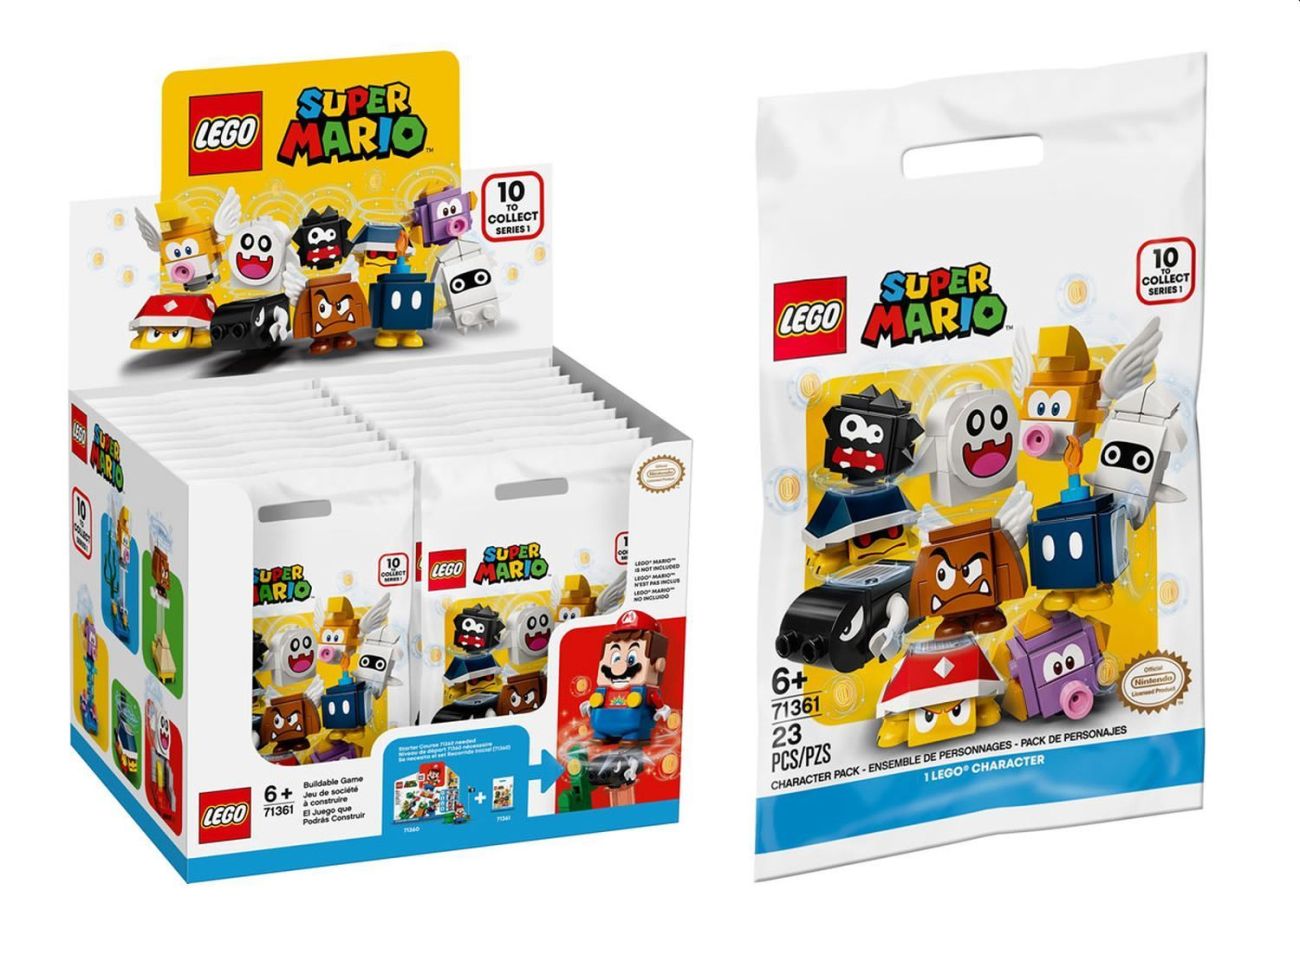 LEGO 71361 Super Mario Sammelfiguren ab August erhältlich